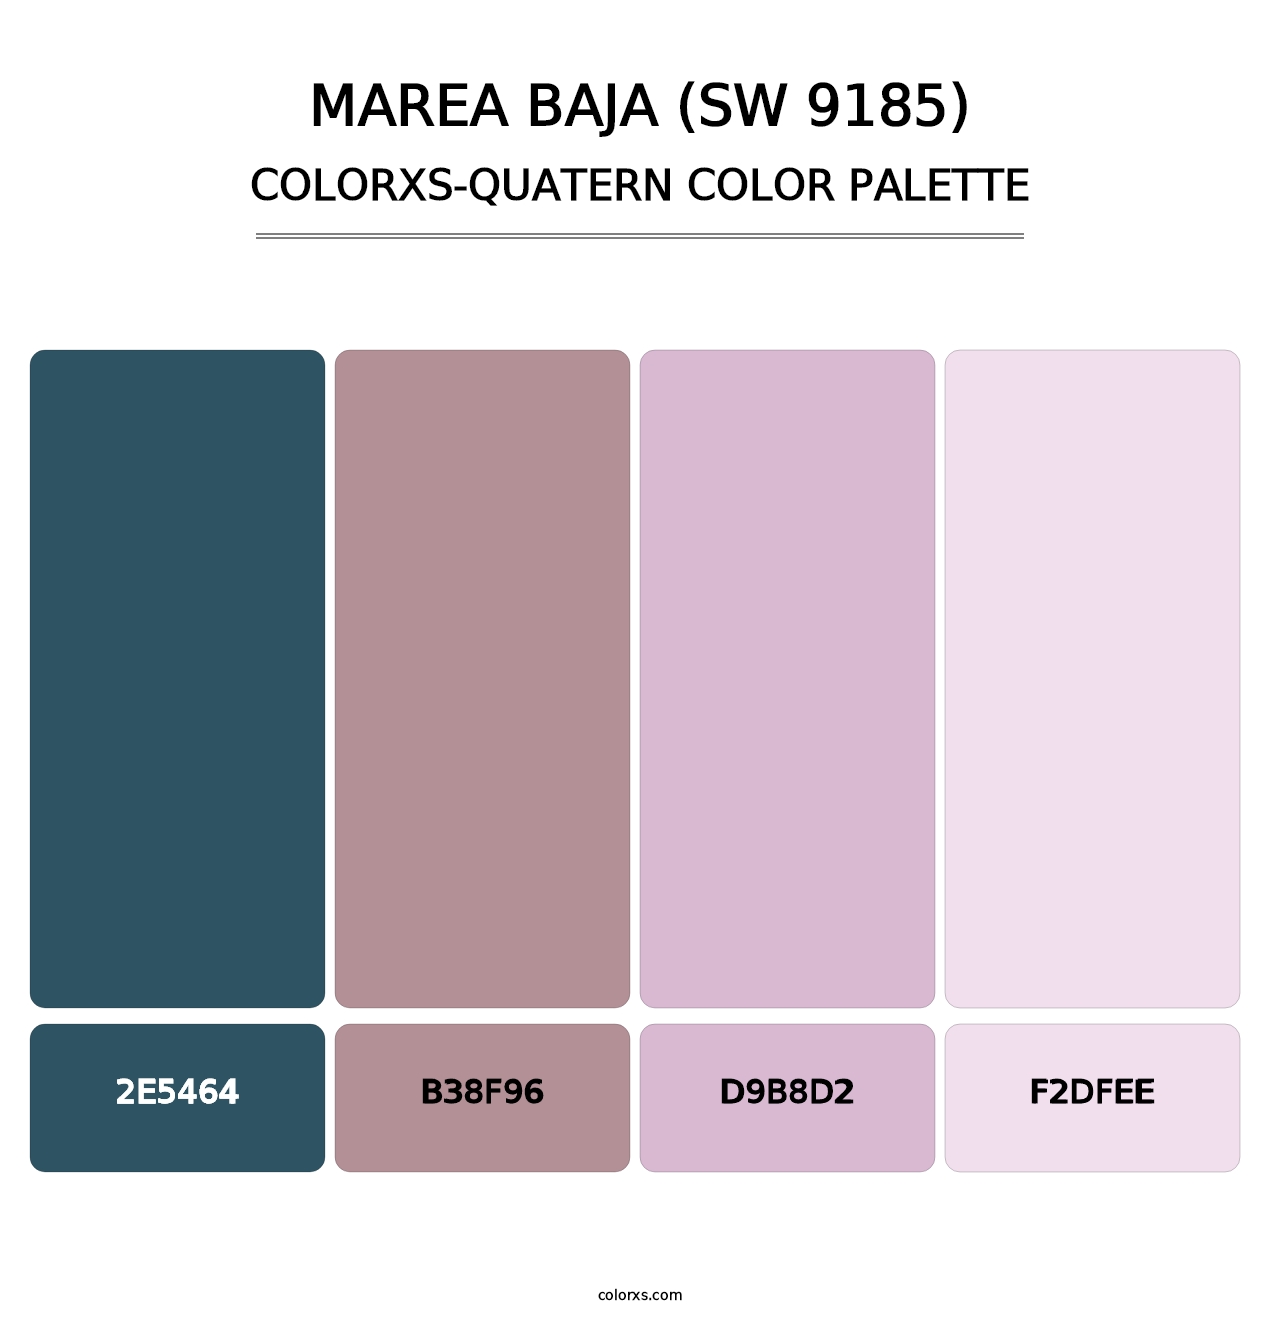 Marea Baja (SW 9185) - Colorxs Quatern Palette